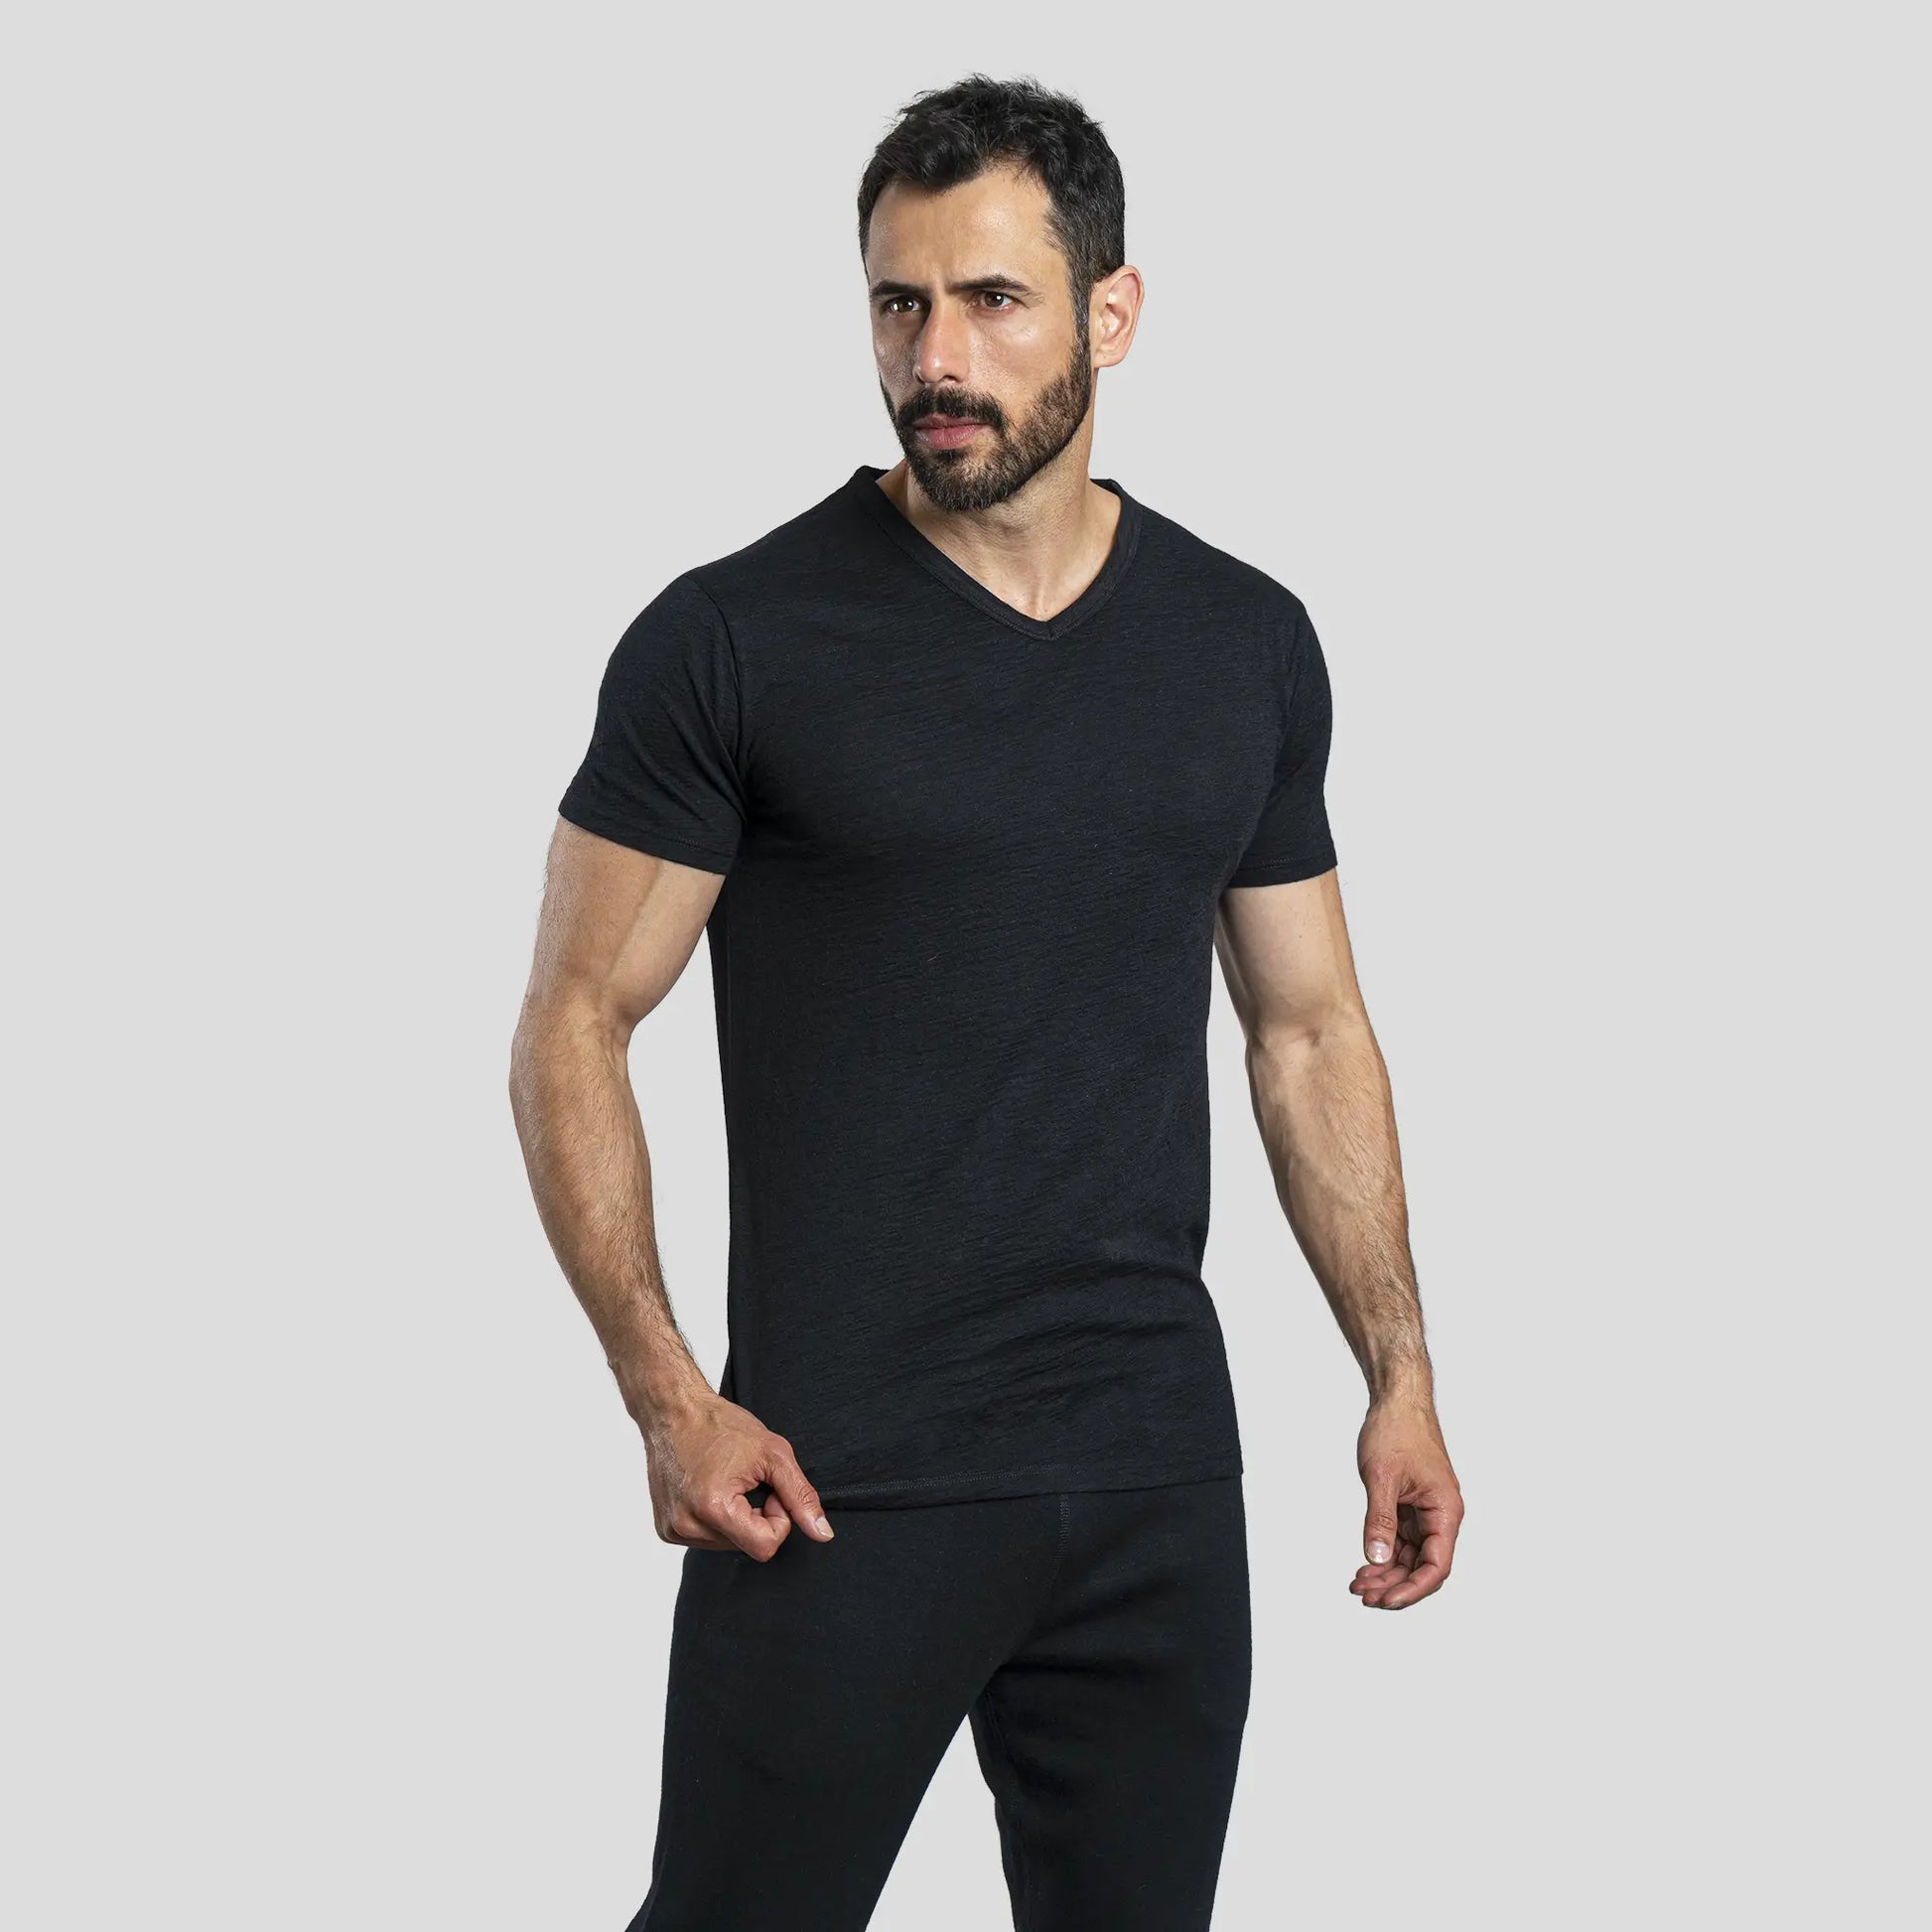 mens ecological vneck tshirt color black